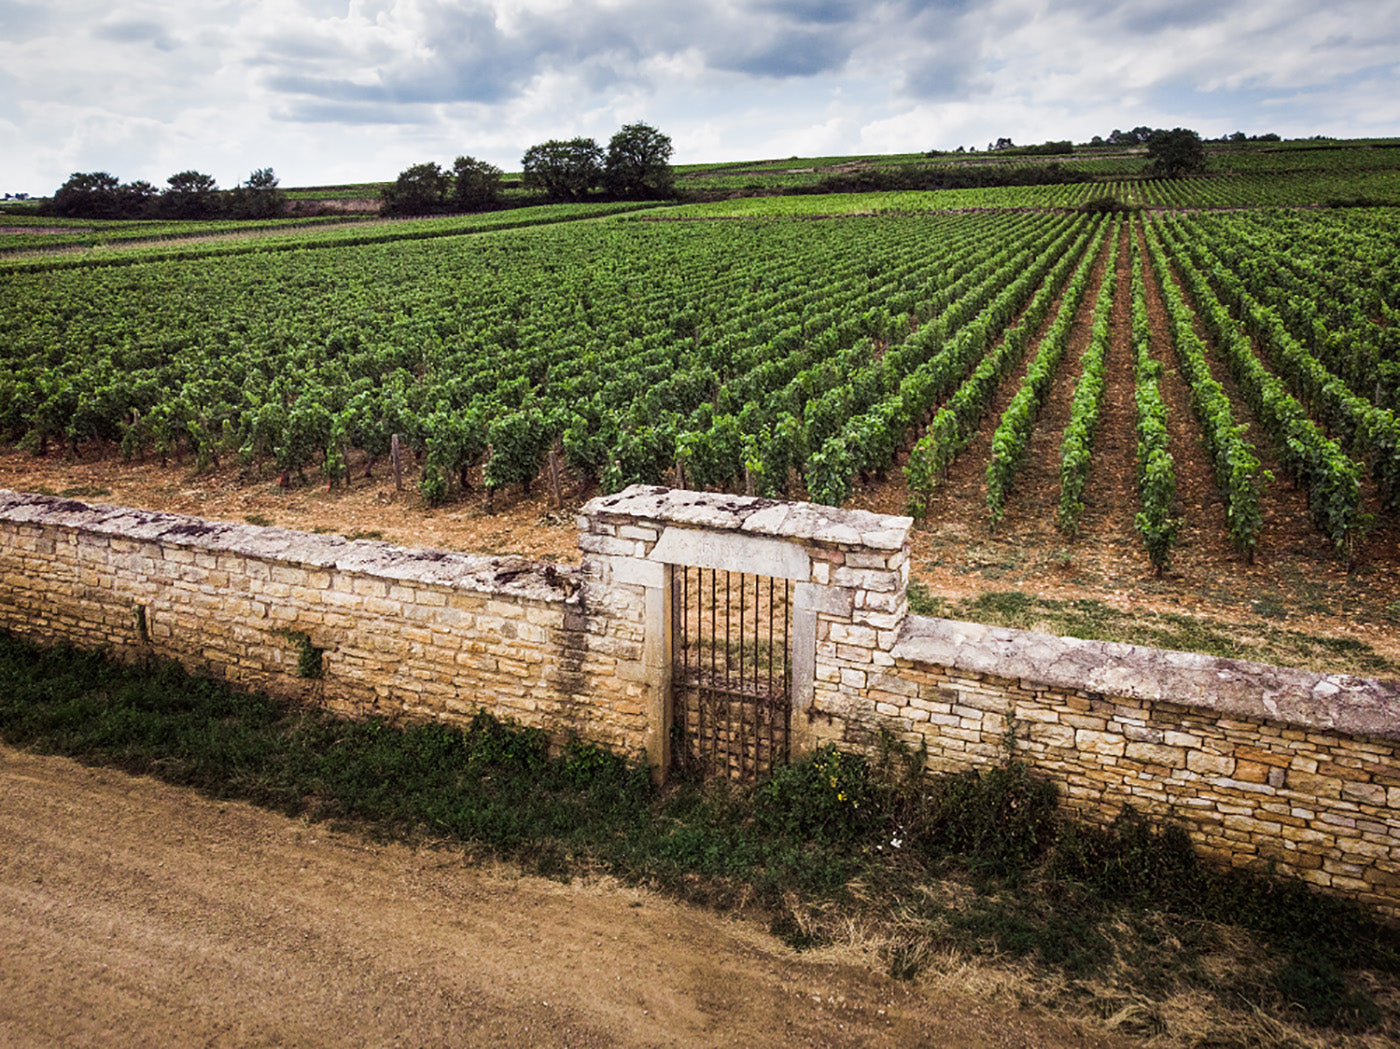 Parcelles de vignes en Bourgogne, typique de la classification des vins